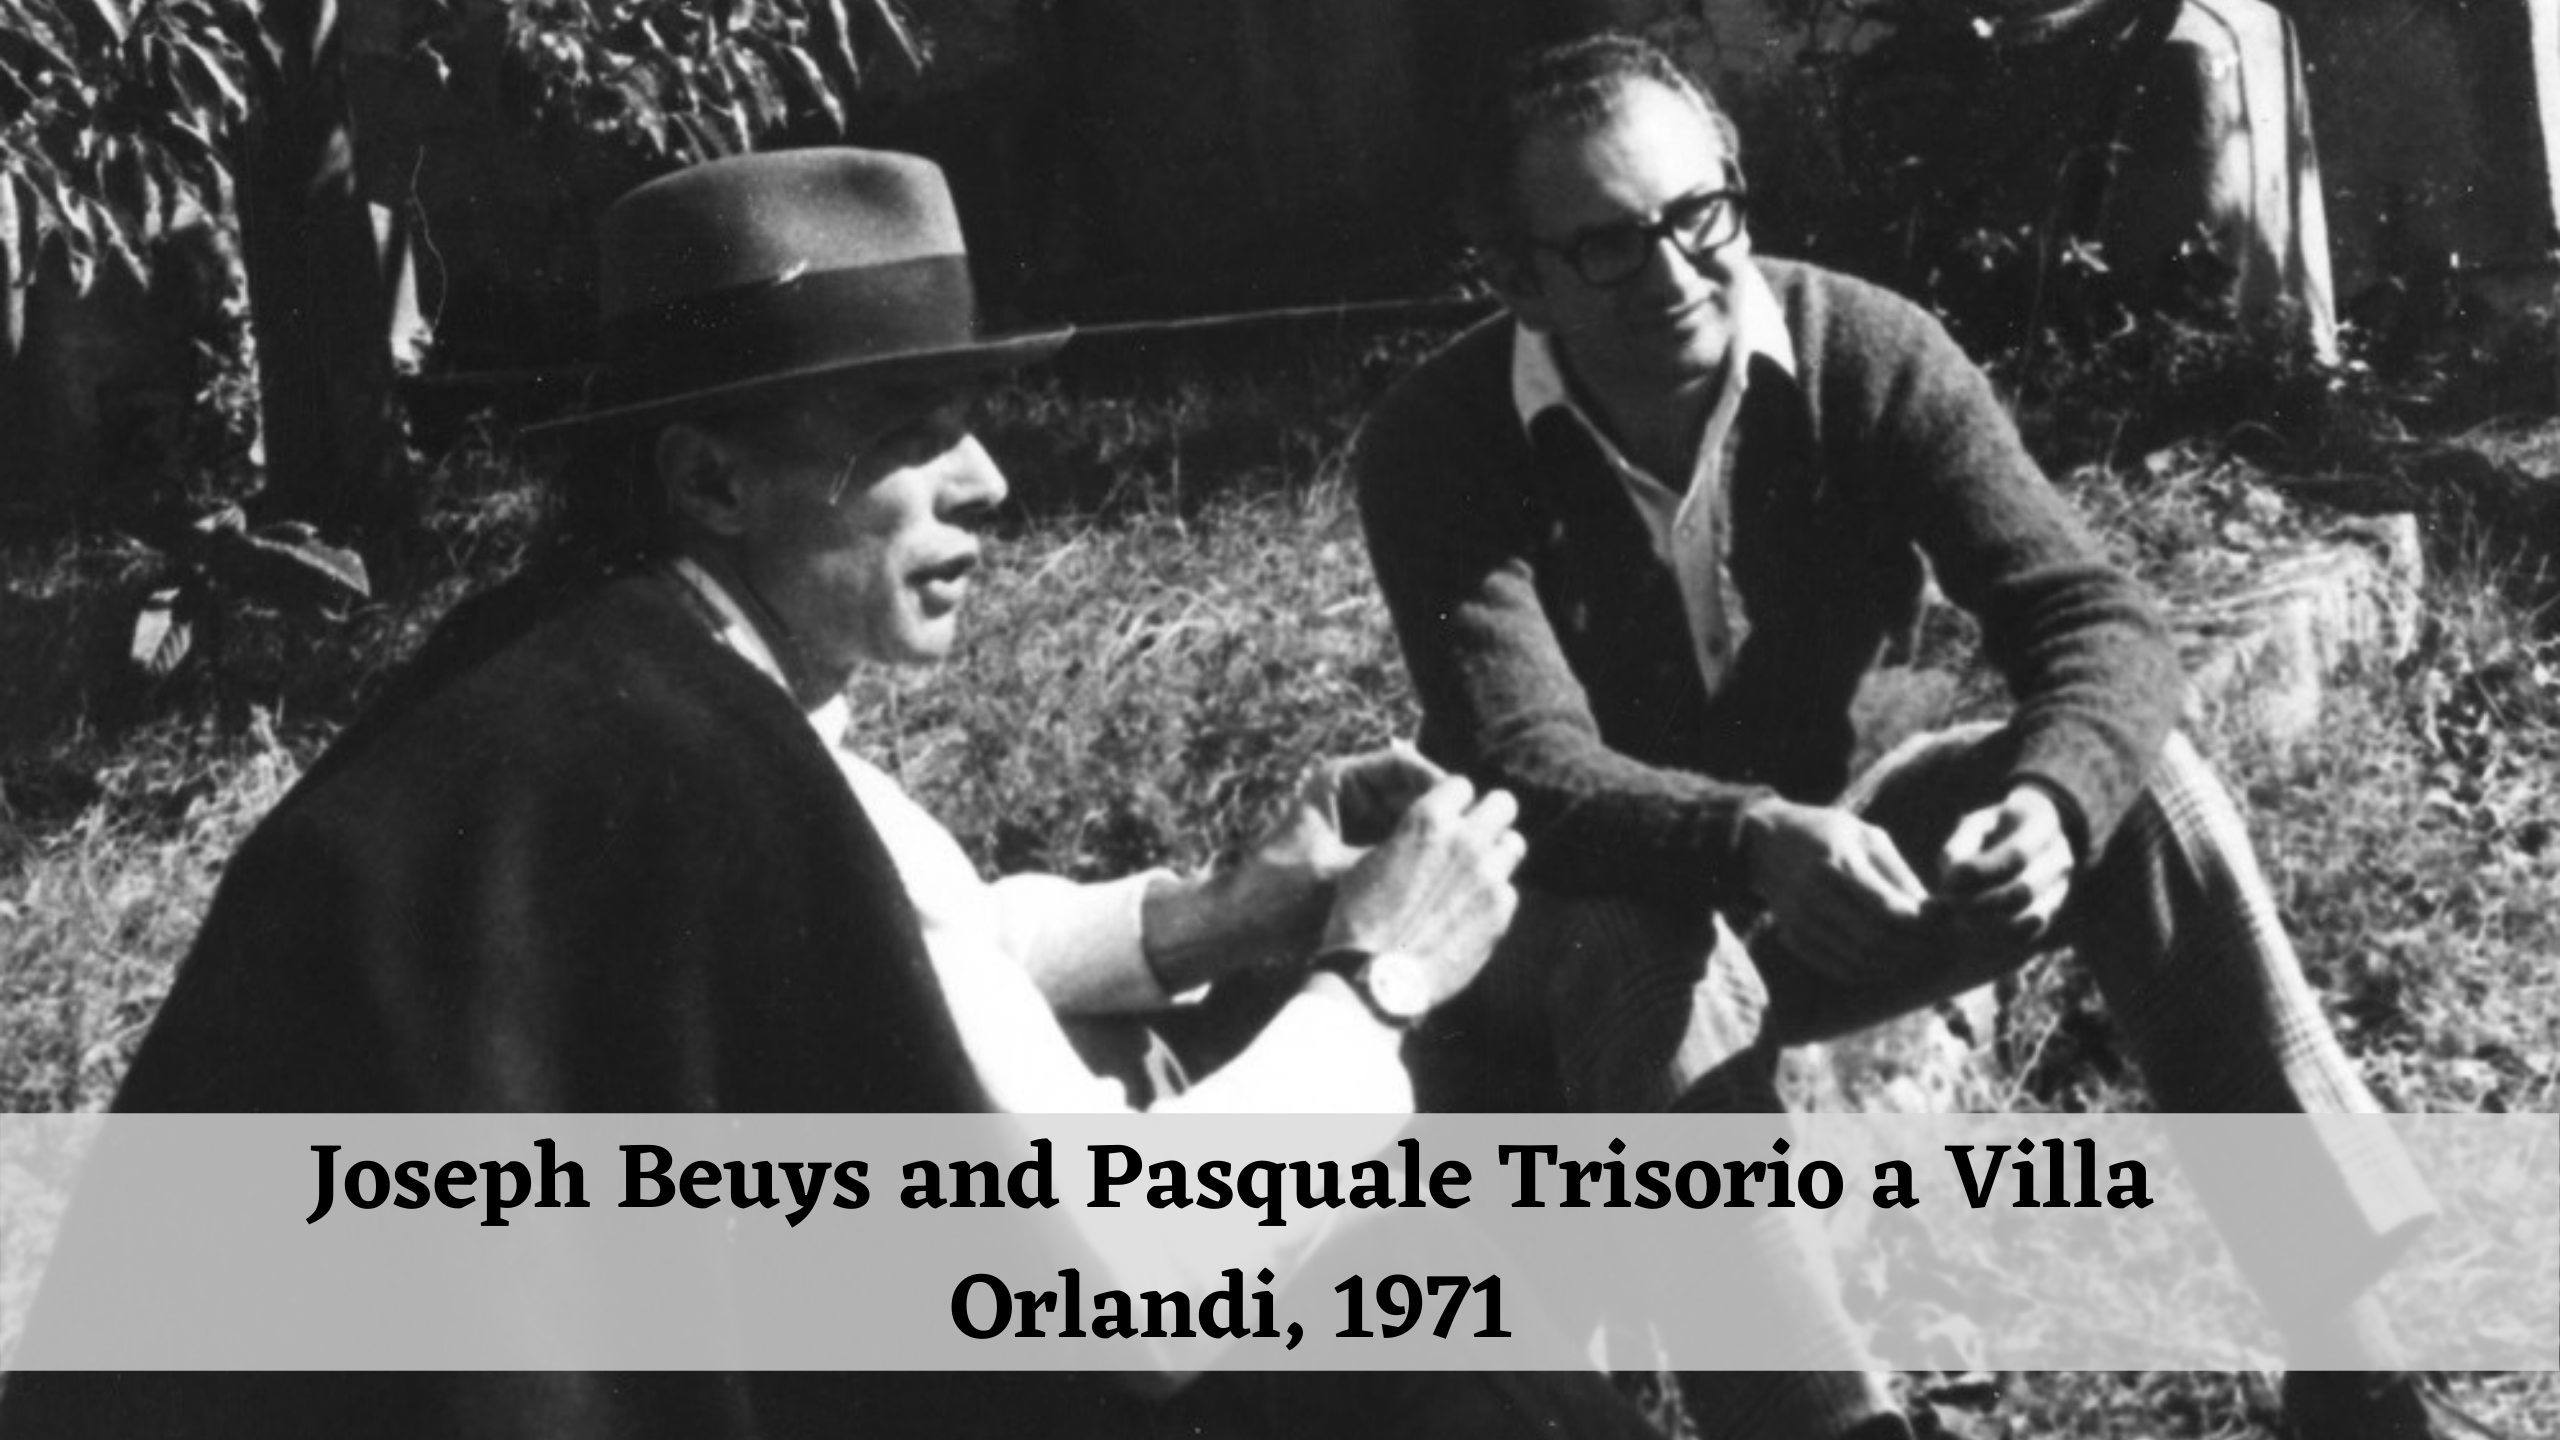 Joseph Beuys and Pasquale Trisorio a Villa Orlandi, 1971